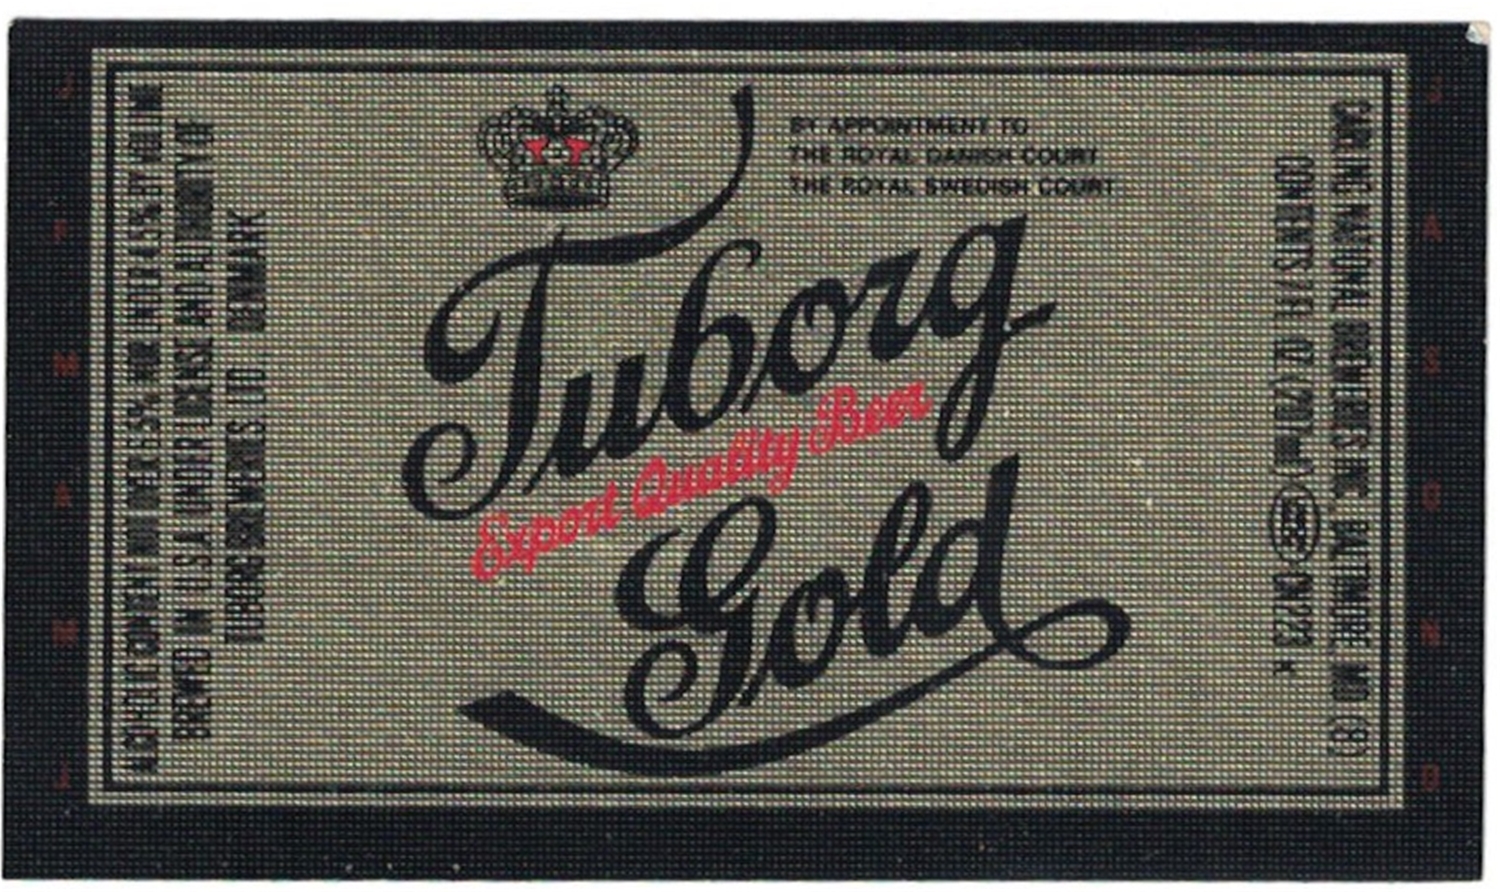 Tuborg Gold Beer Label